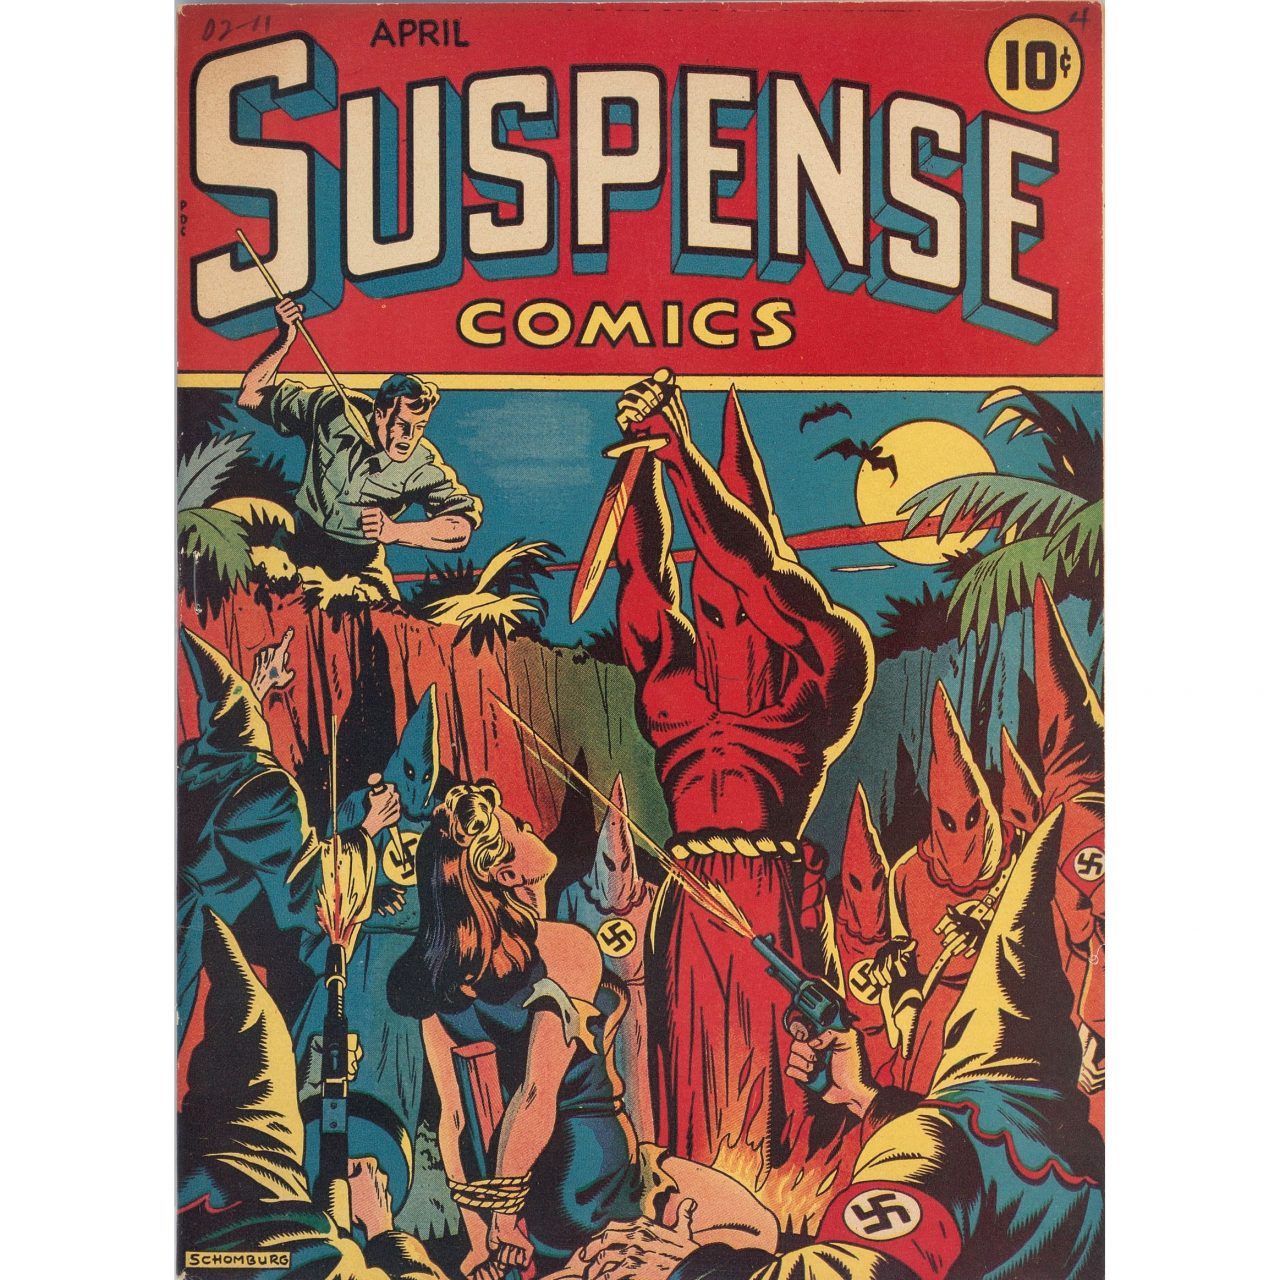 1280px x 1280px - Suspense Comnics: An Infamous Nazi Torture Bondage Comic Book (1944) -  Flashbak